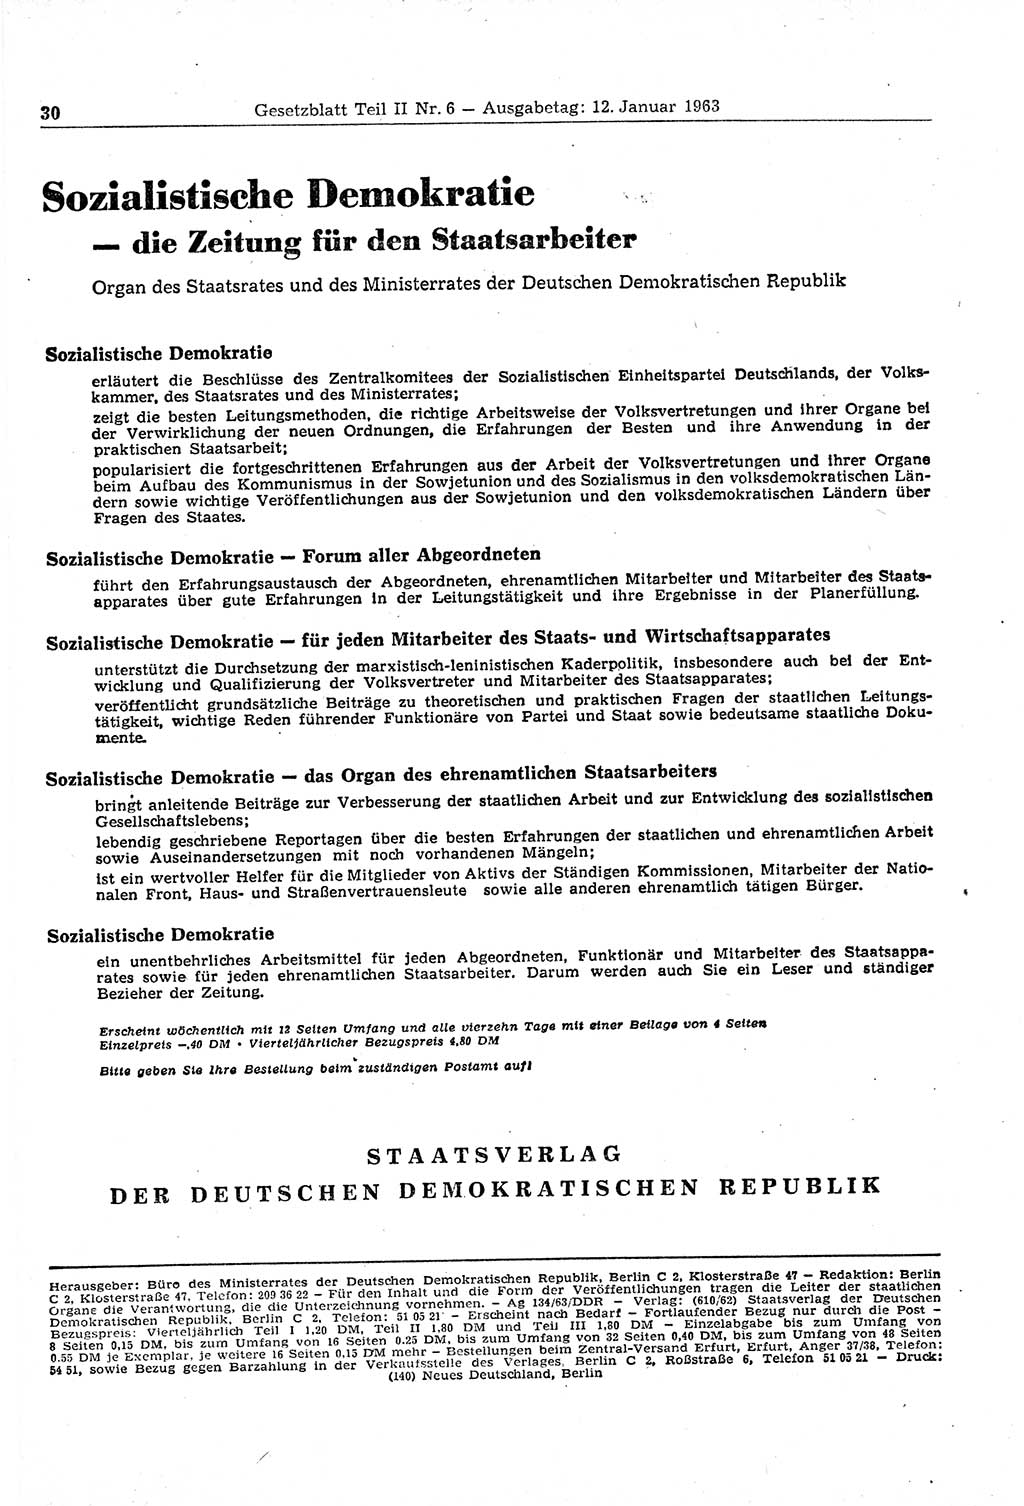 Gesetzblatt (GBl.) der Deutschen Demokratischen Republik (DDR) Teil ⅠⅠ 1963, Seite 30 (GBl. DDR ⅠⅠ 1963, S. 30)